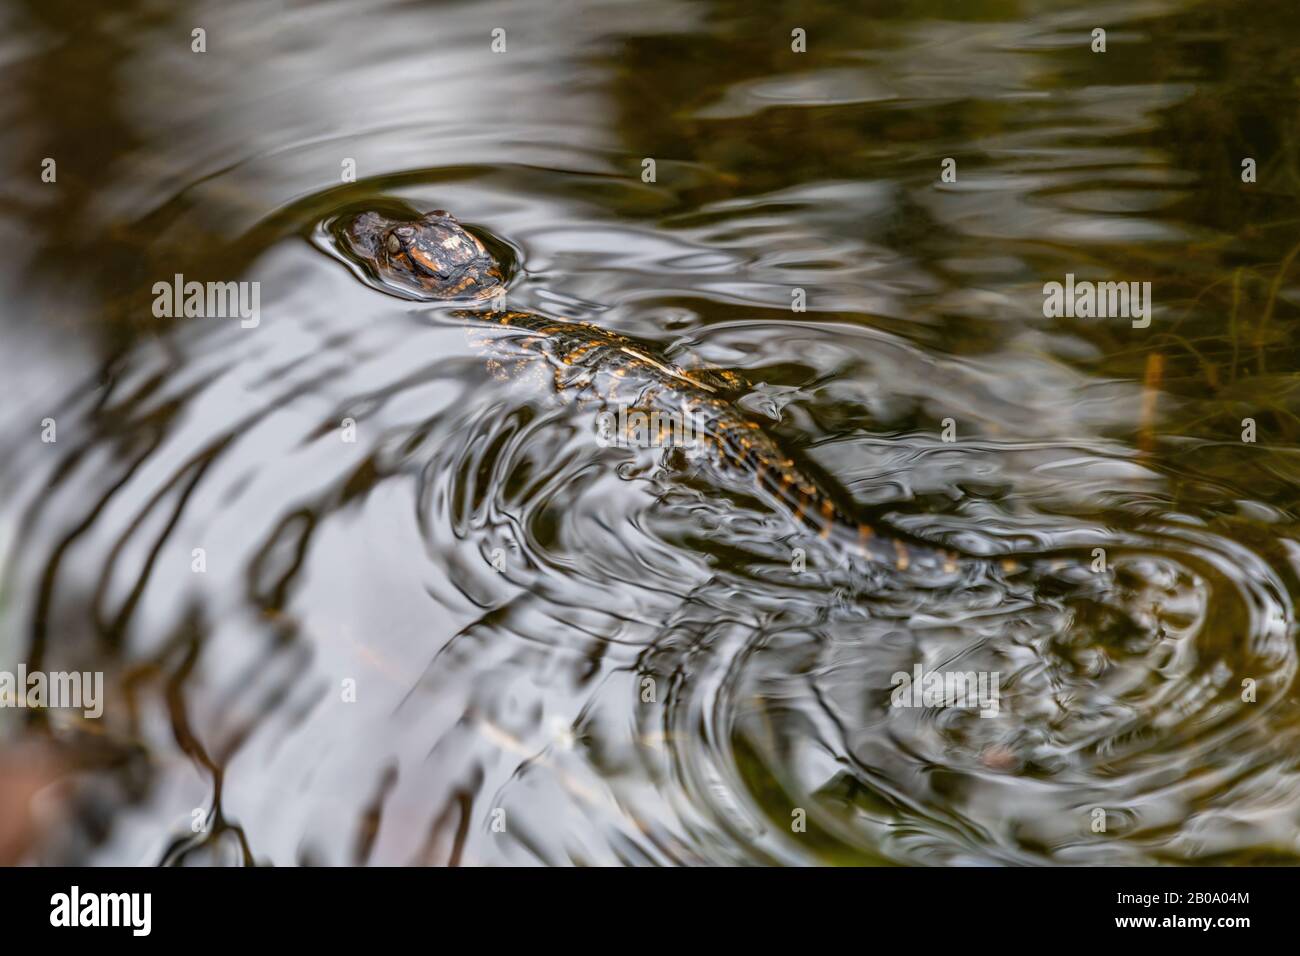 Nahaufnahme eines jungen amerikanischen Alligators (Alligator mississippiensis), der auf dem Wasser schwimmt, in Florida, USA. Stockfoto